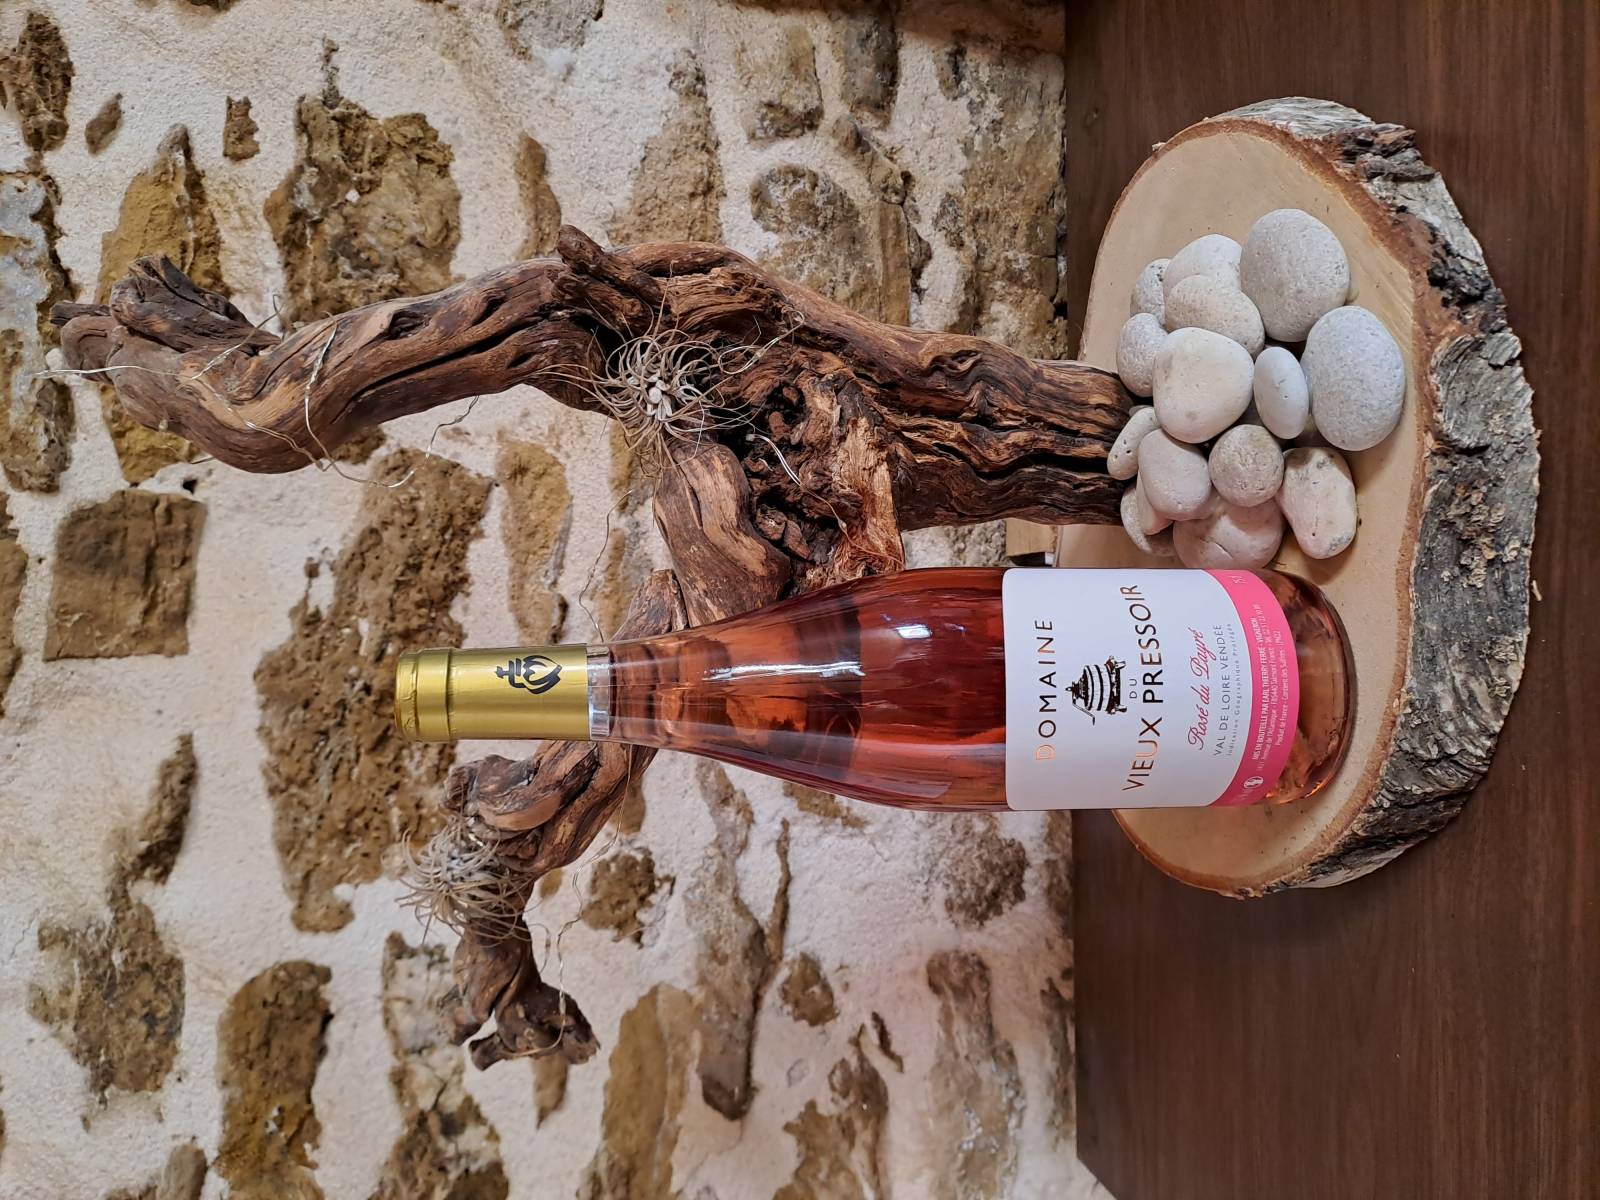 vins rosés Talmont Saint Hilaire Vendée rosé du payré